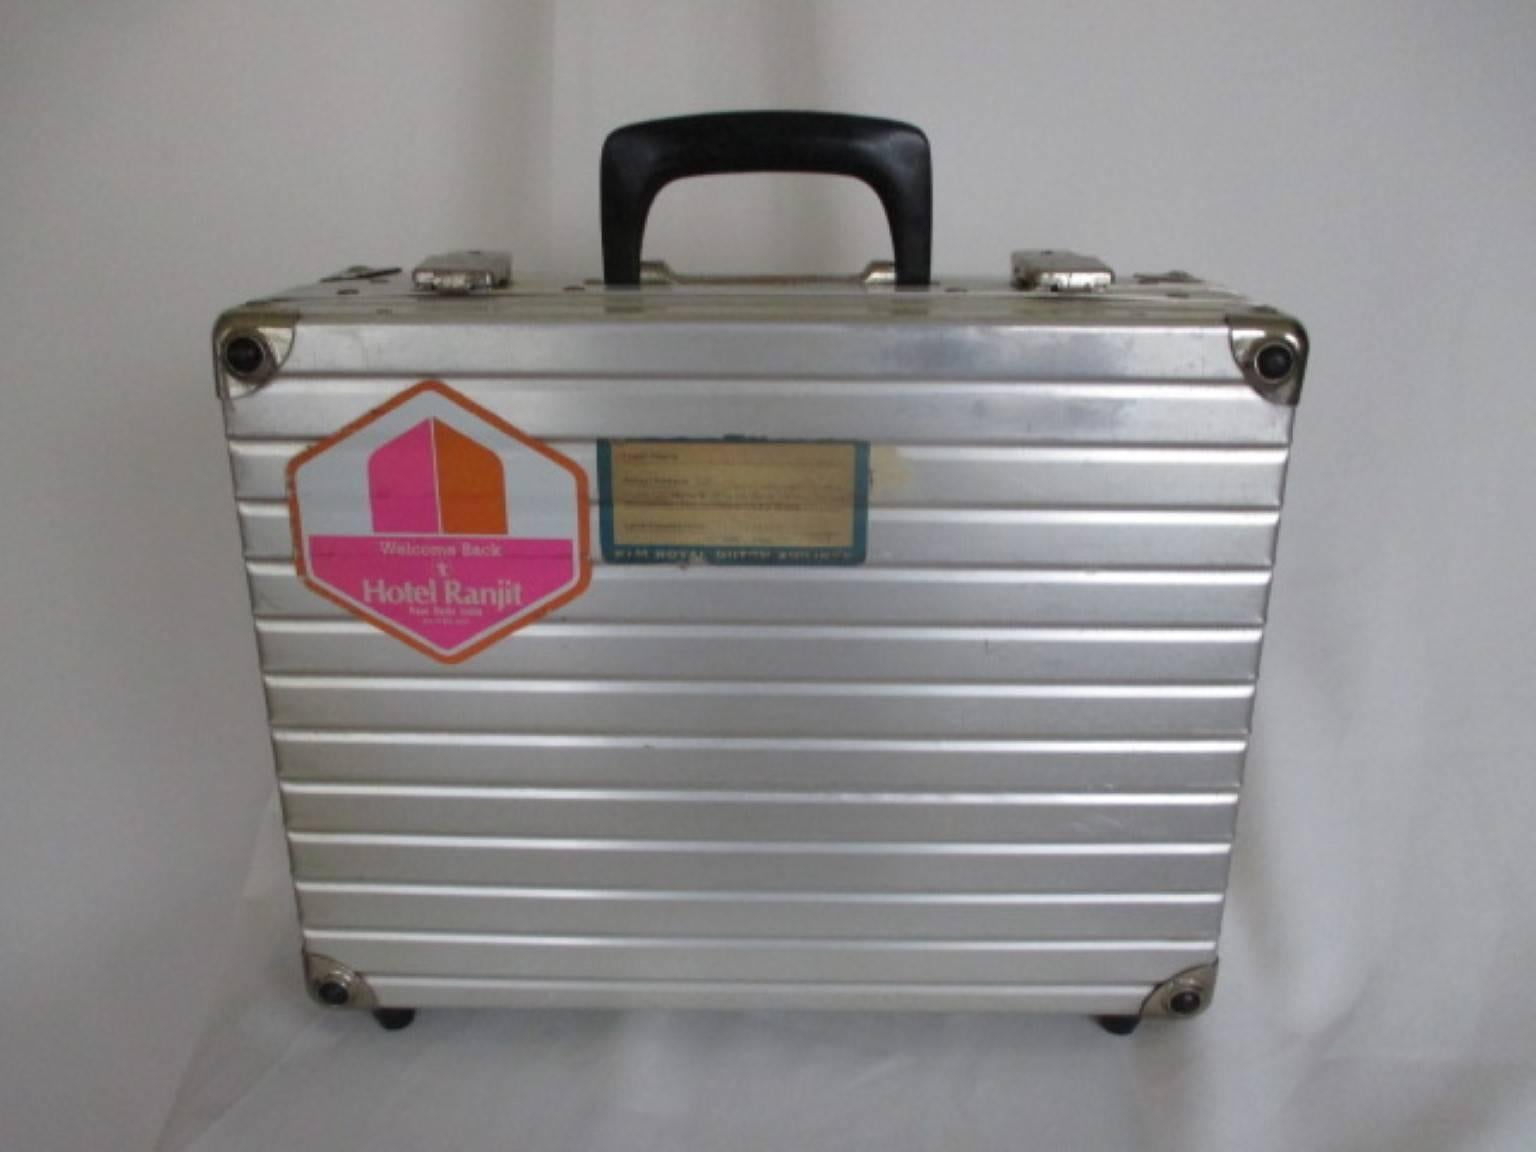 Valise vintage en aluminium de Luggage utilisée, célèbre pour les dj qui voyagent dans le monde entier.
Dimensions : 28 cm x 37 cm x 13 cm
Veuillez noter que les articles vintage ne sont pas neufs et peuvent donc présenter de légères imperfections.